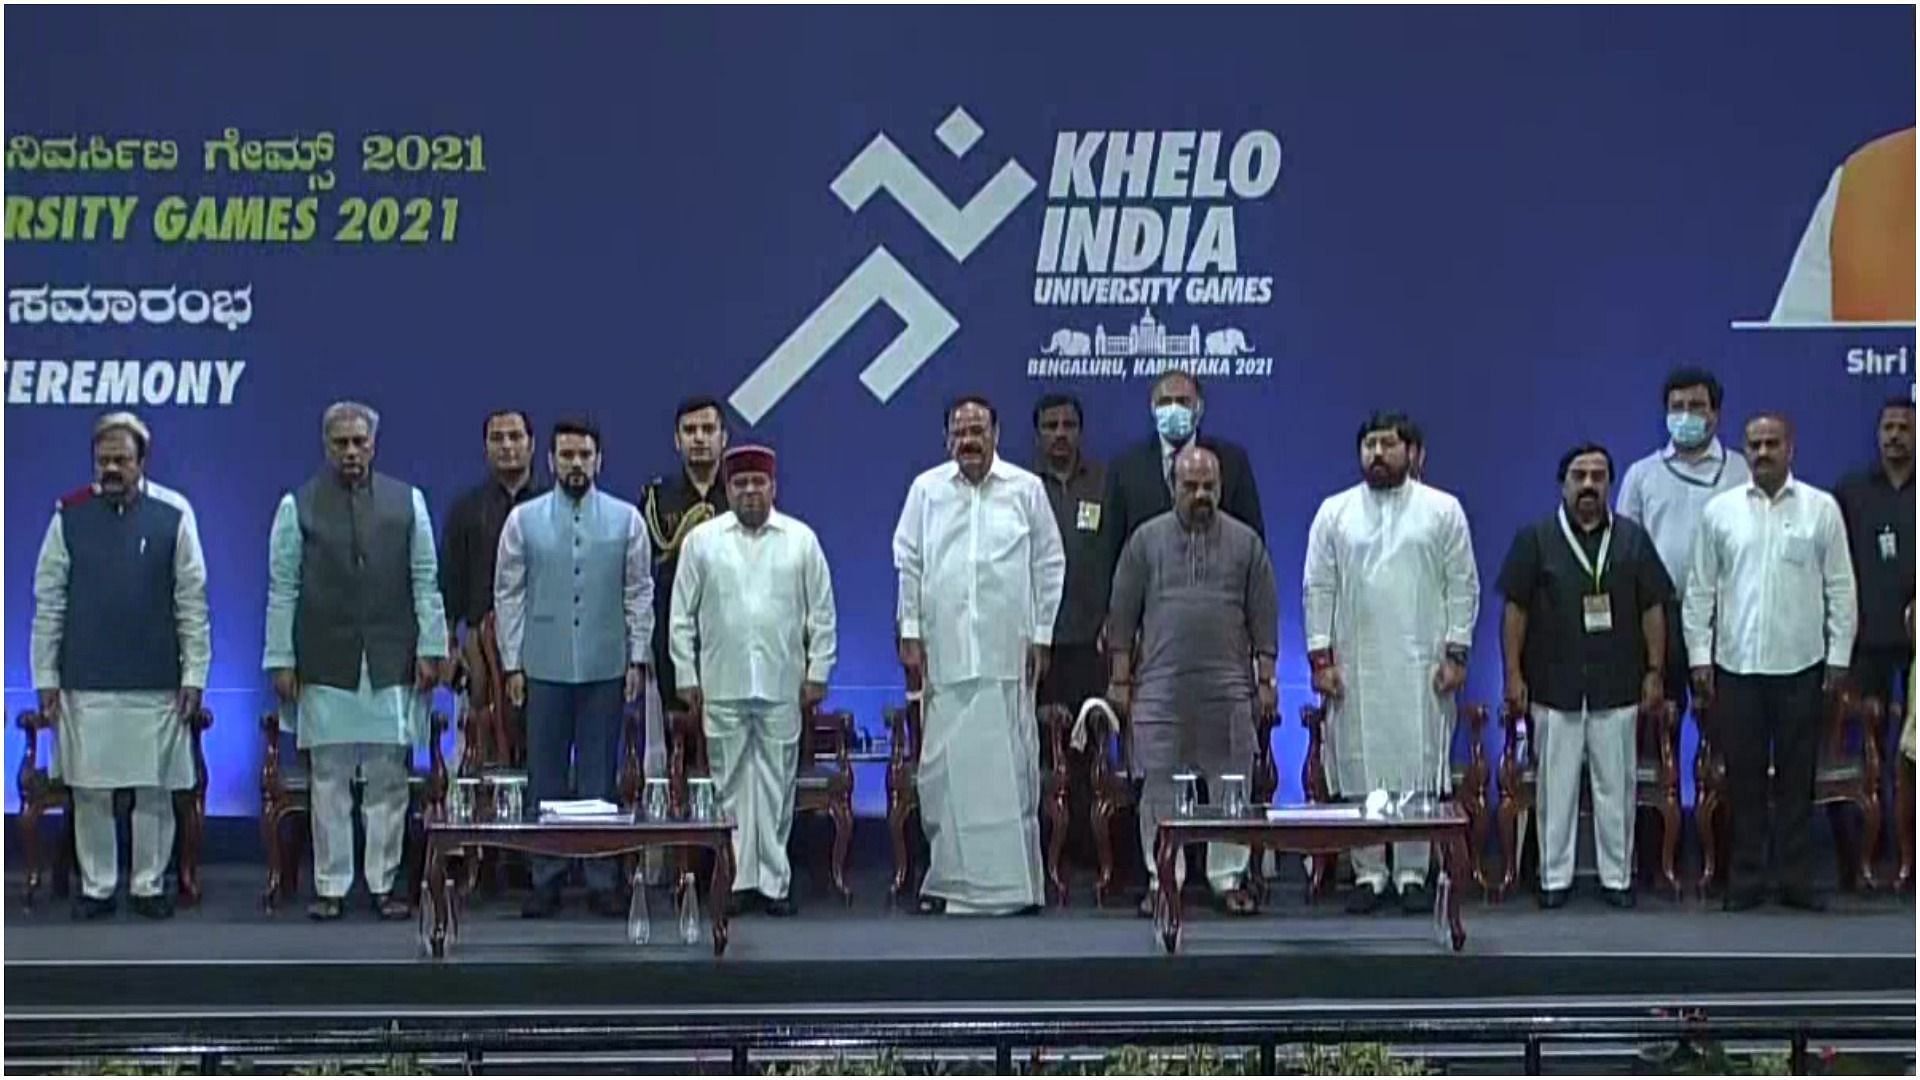 Khelo India University Games 2021 opening Ceremony (Pic Credit: Khelo India)